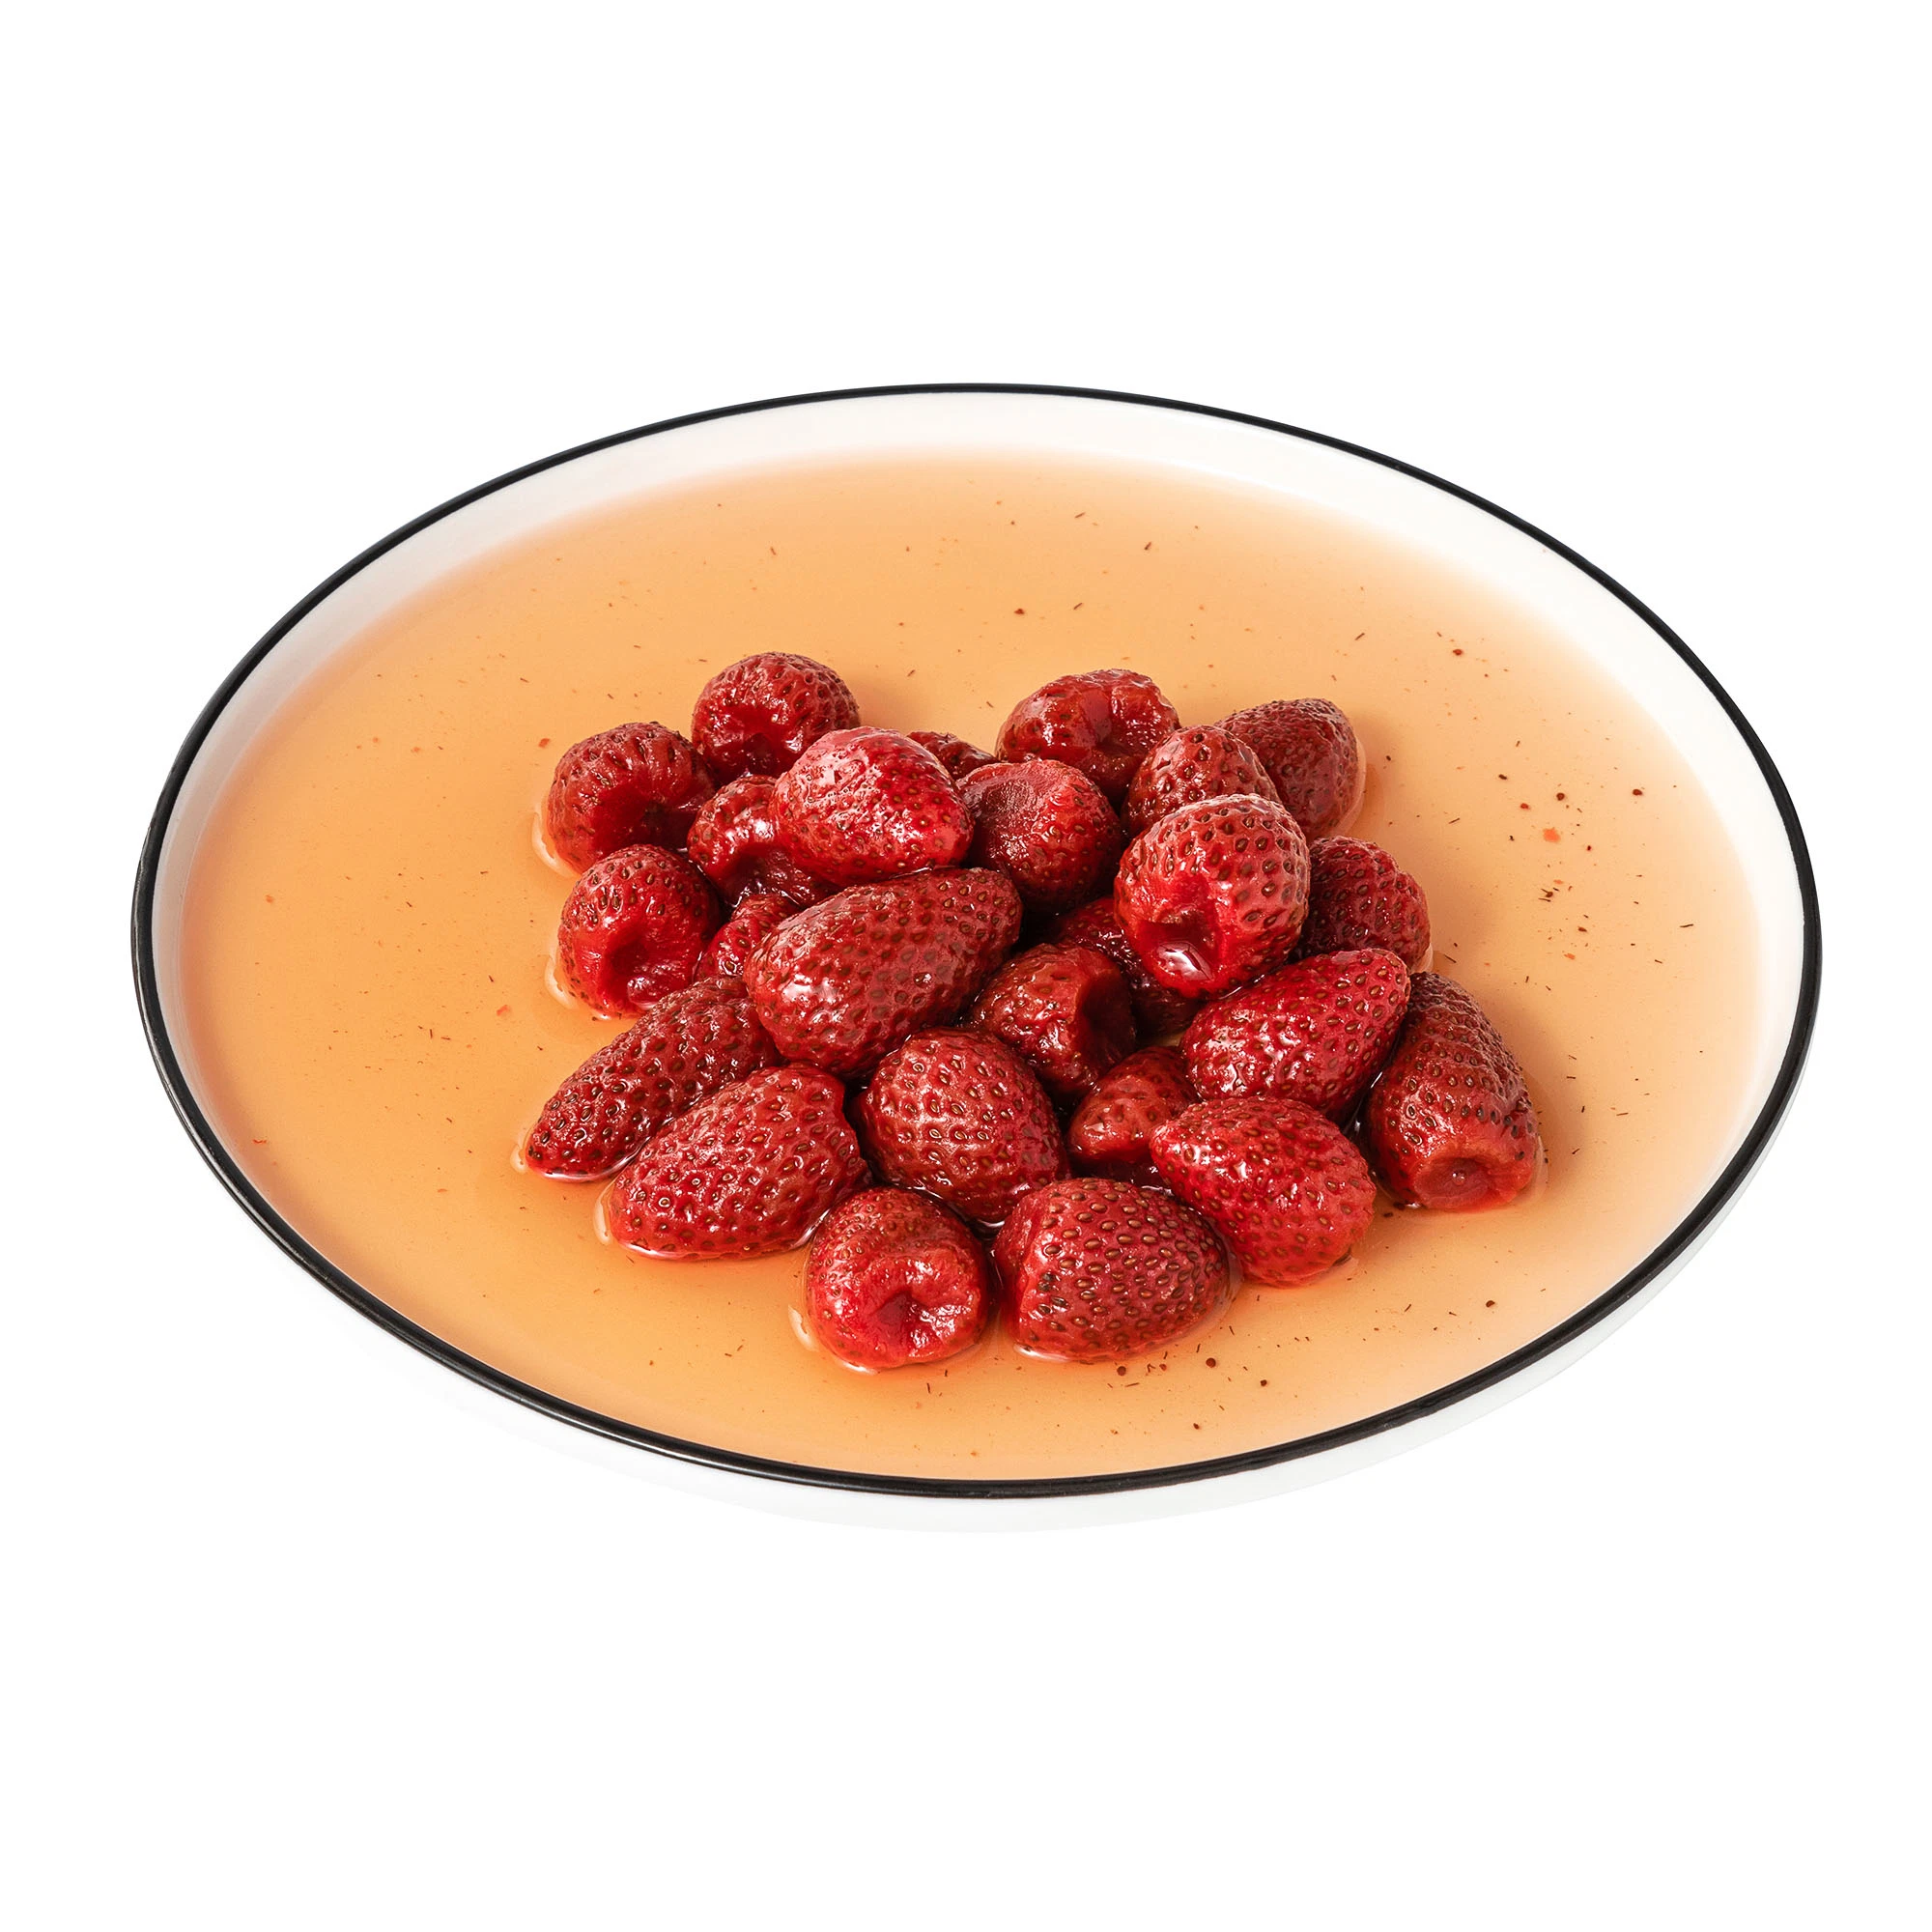 Fruta fresca de fresas frescas enlatadas en almíbar de la luz de 425g